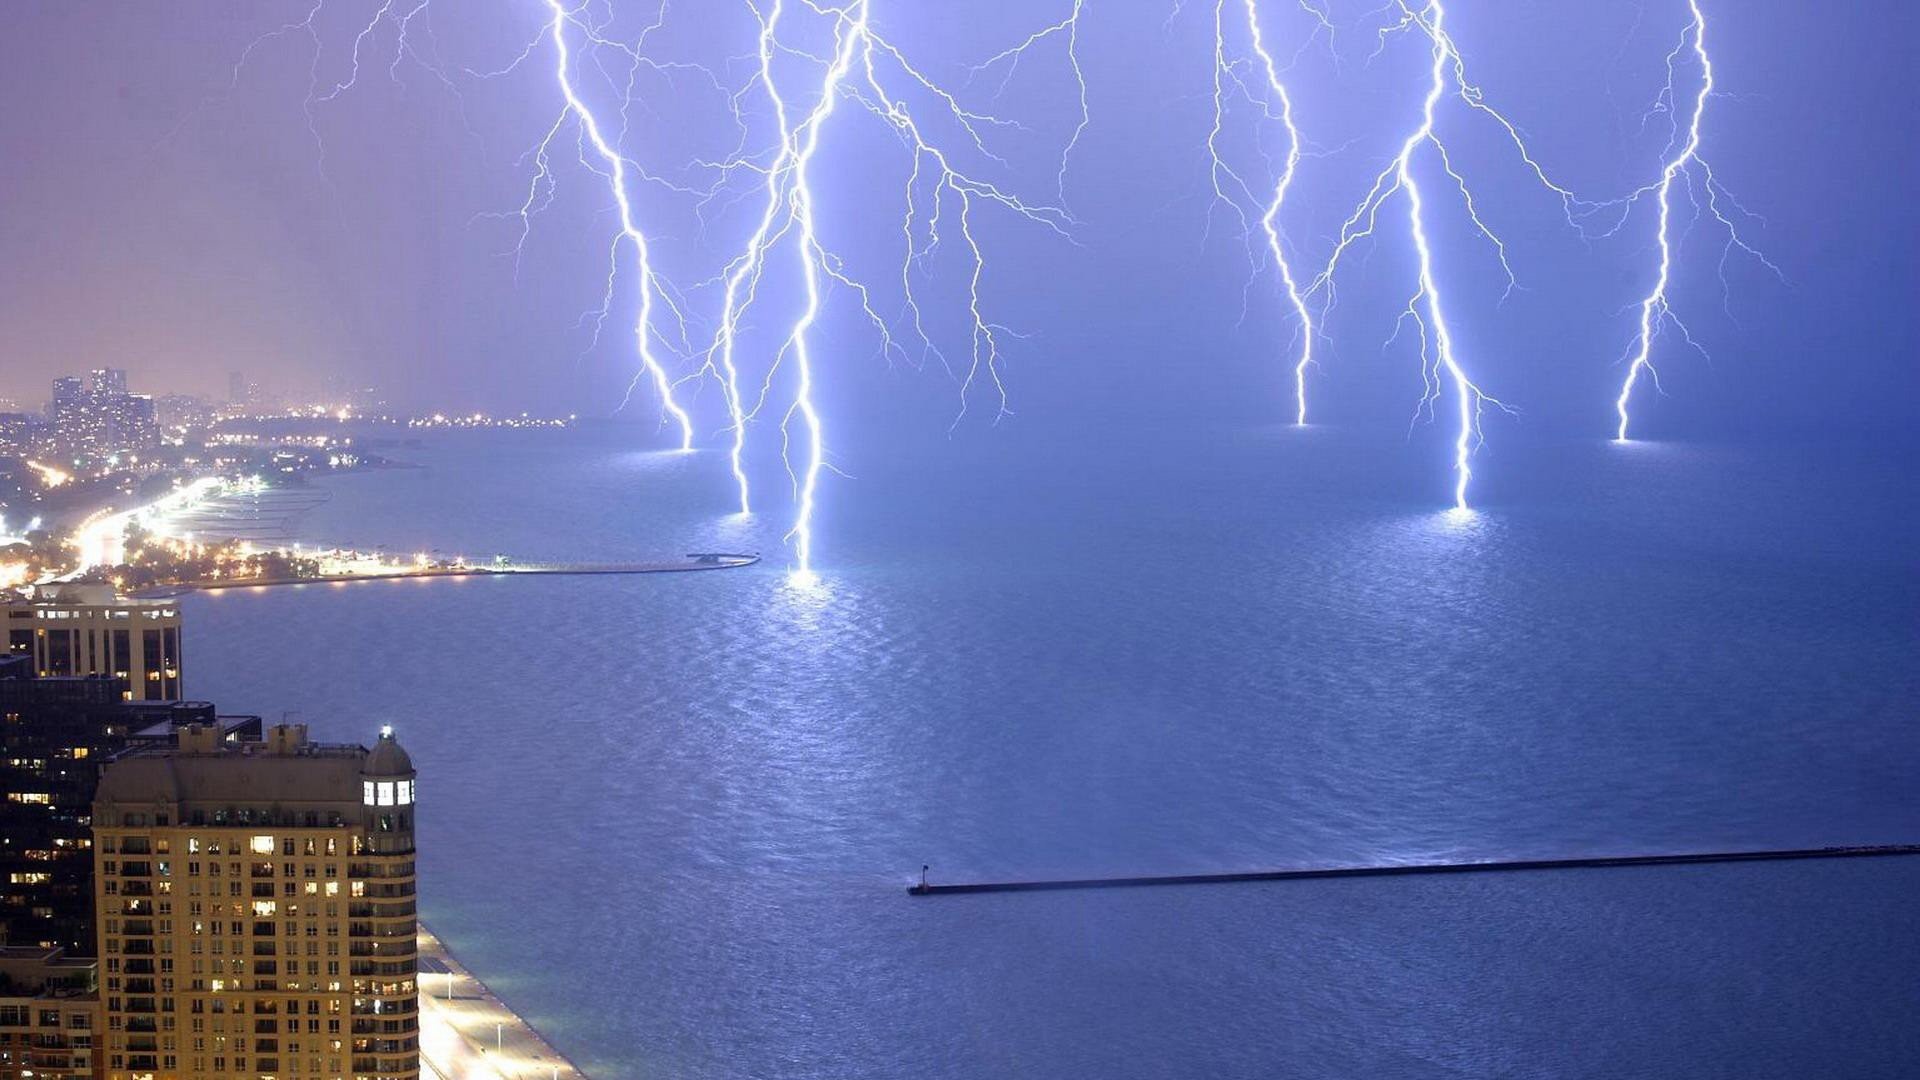 1920x1080 Water nature storm buildings lightning lightning bolts cities sea beaches  wallpaper |  | 251896 | WallpaperUP